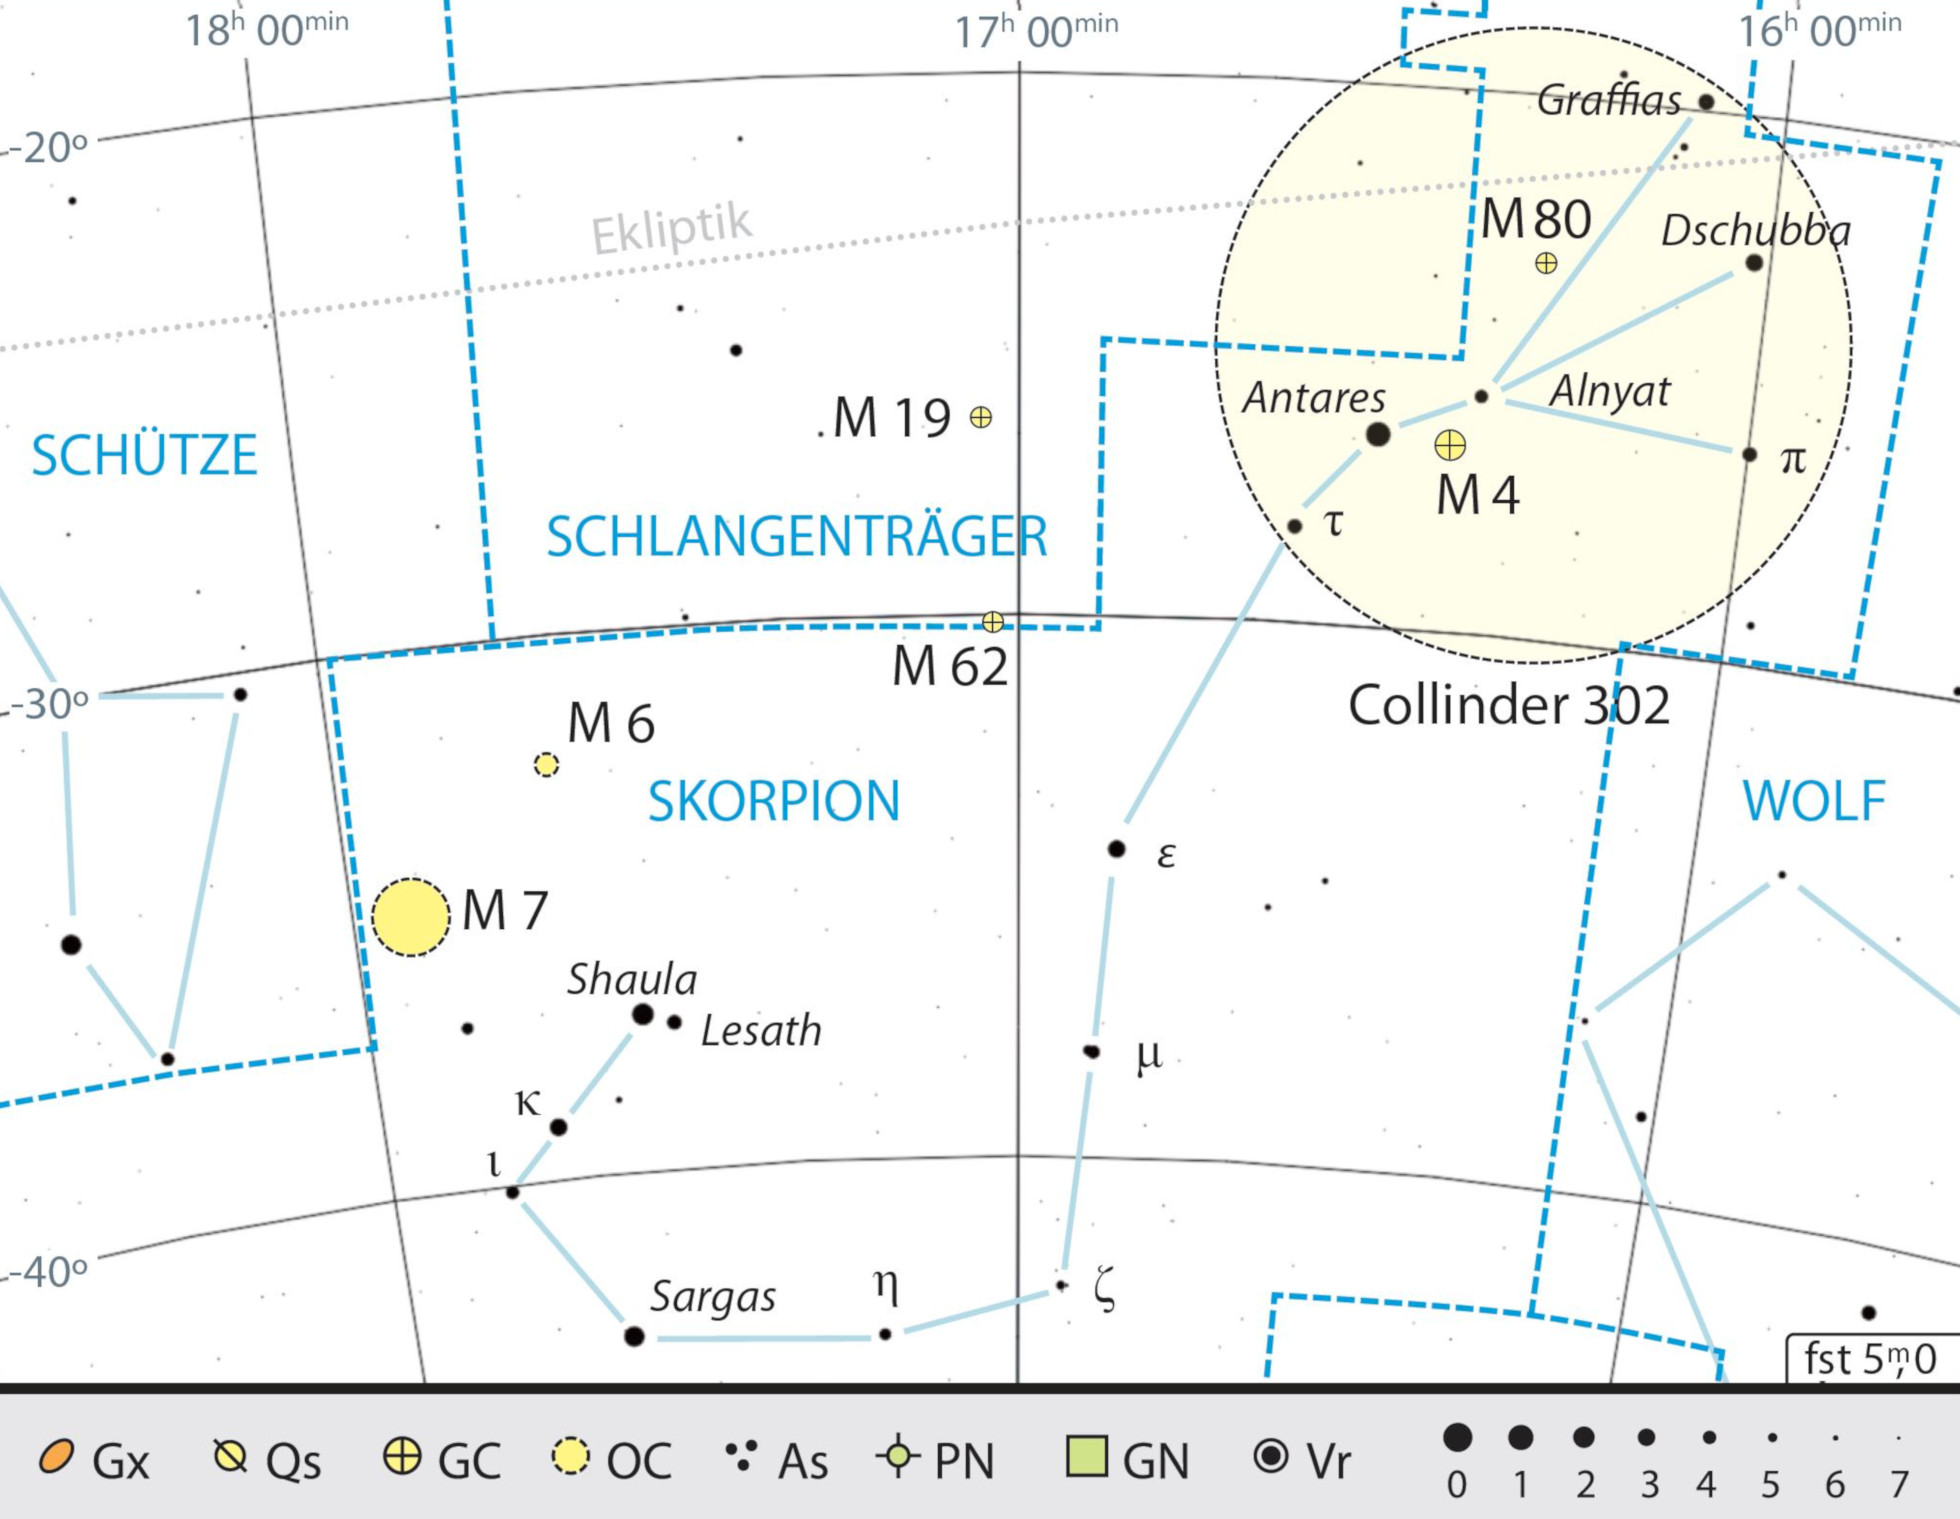 Mapa de la constelación de Escorpio con consejos de observación, con el cúmulo en movimiento de Antares señalado con un círculo rojo. Kai v. Schauroth